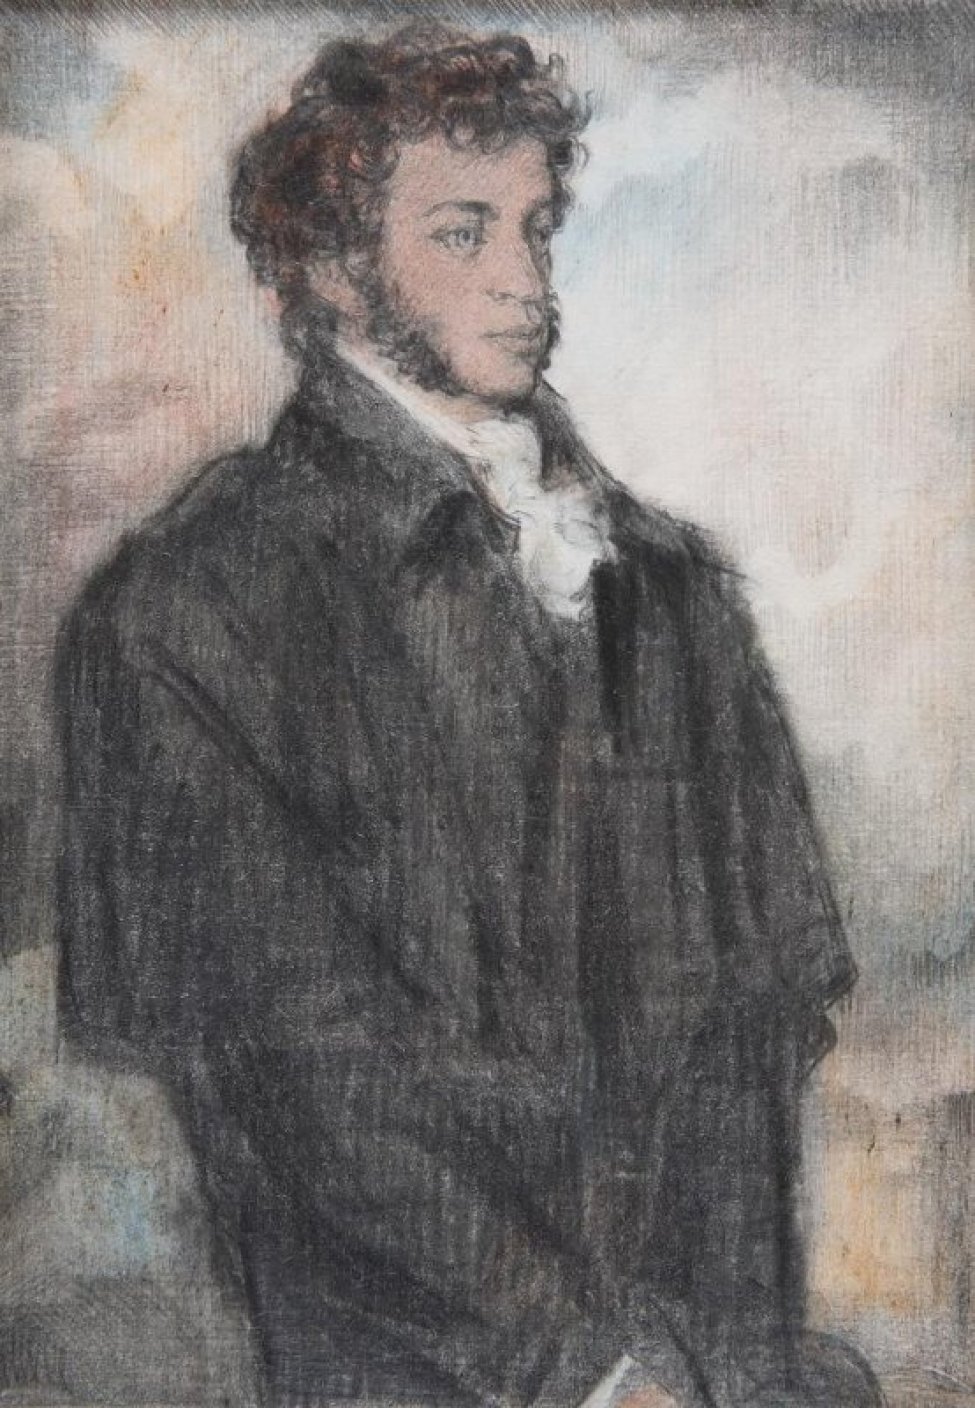 На фоне облачного неба - победренное изображение  А.С. Пушкина с непокрытой головой в черном пальто с пелериной, из-под которого на груди виден белый галстук; в руках - шляпа.